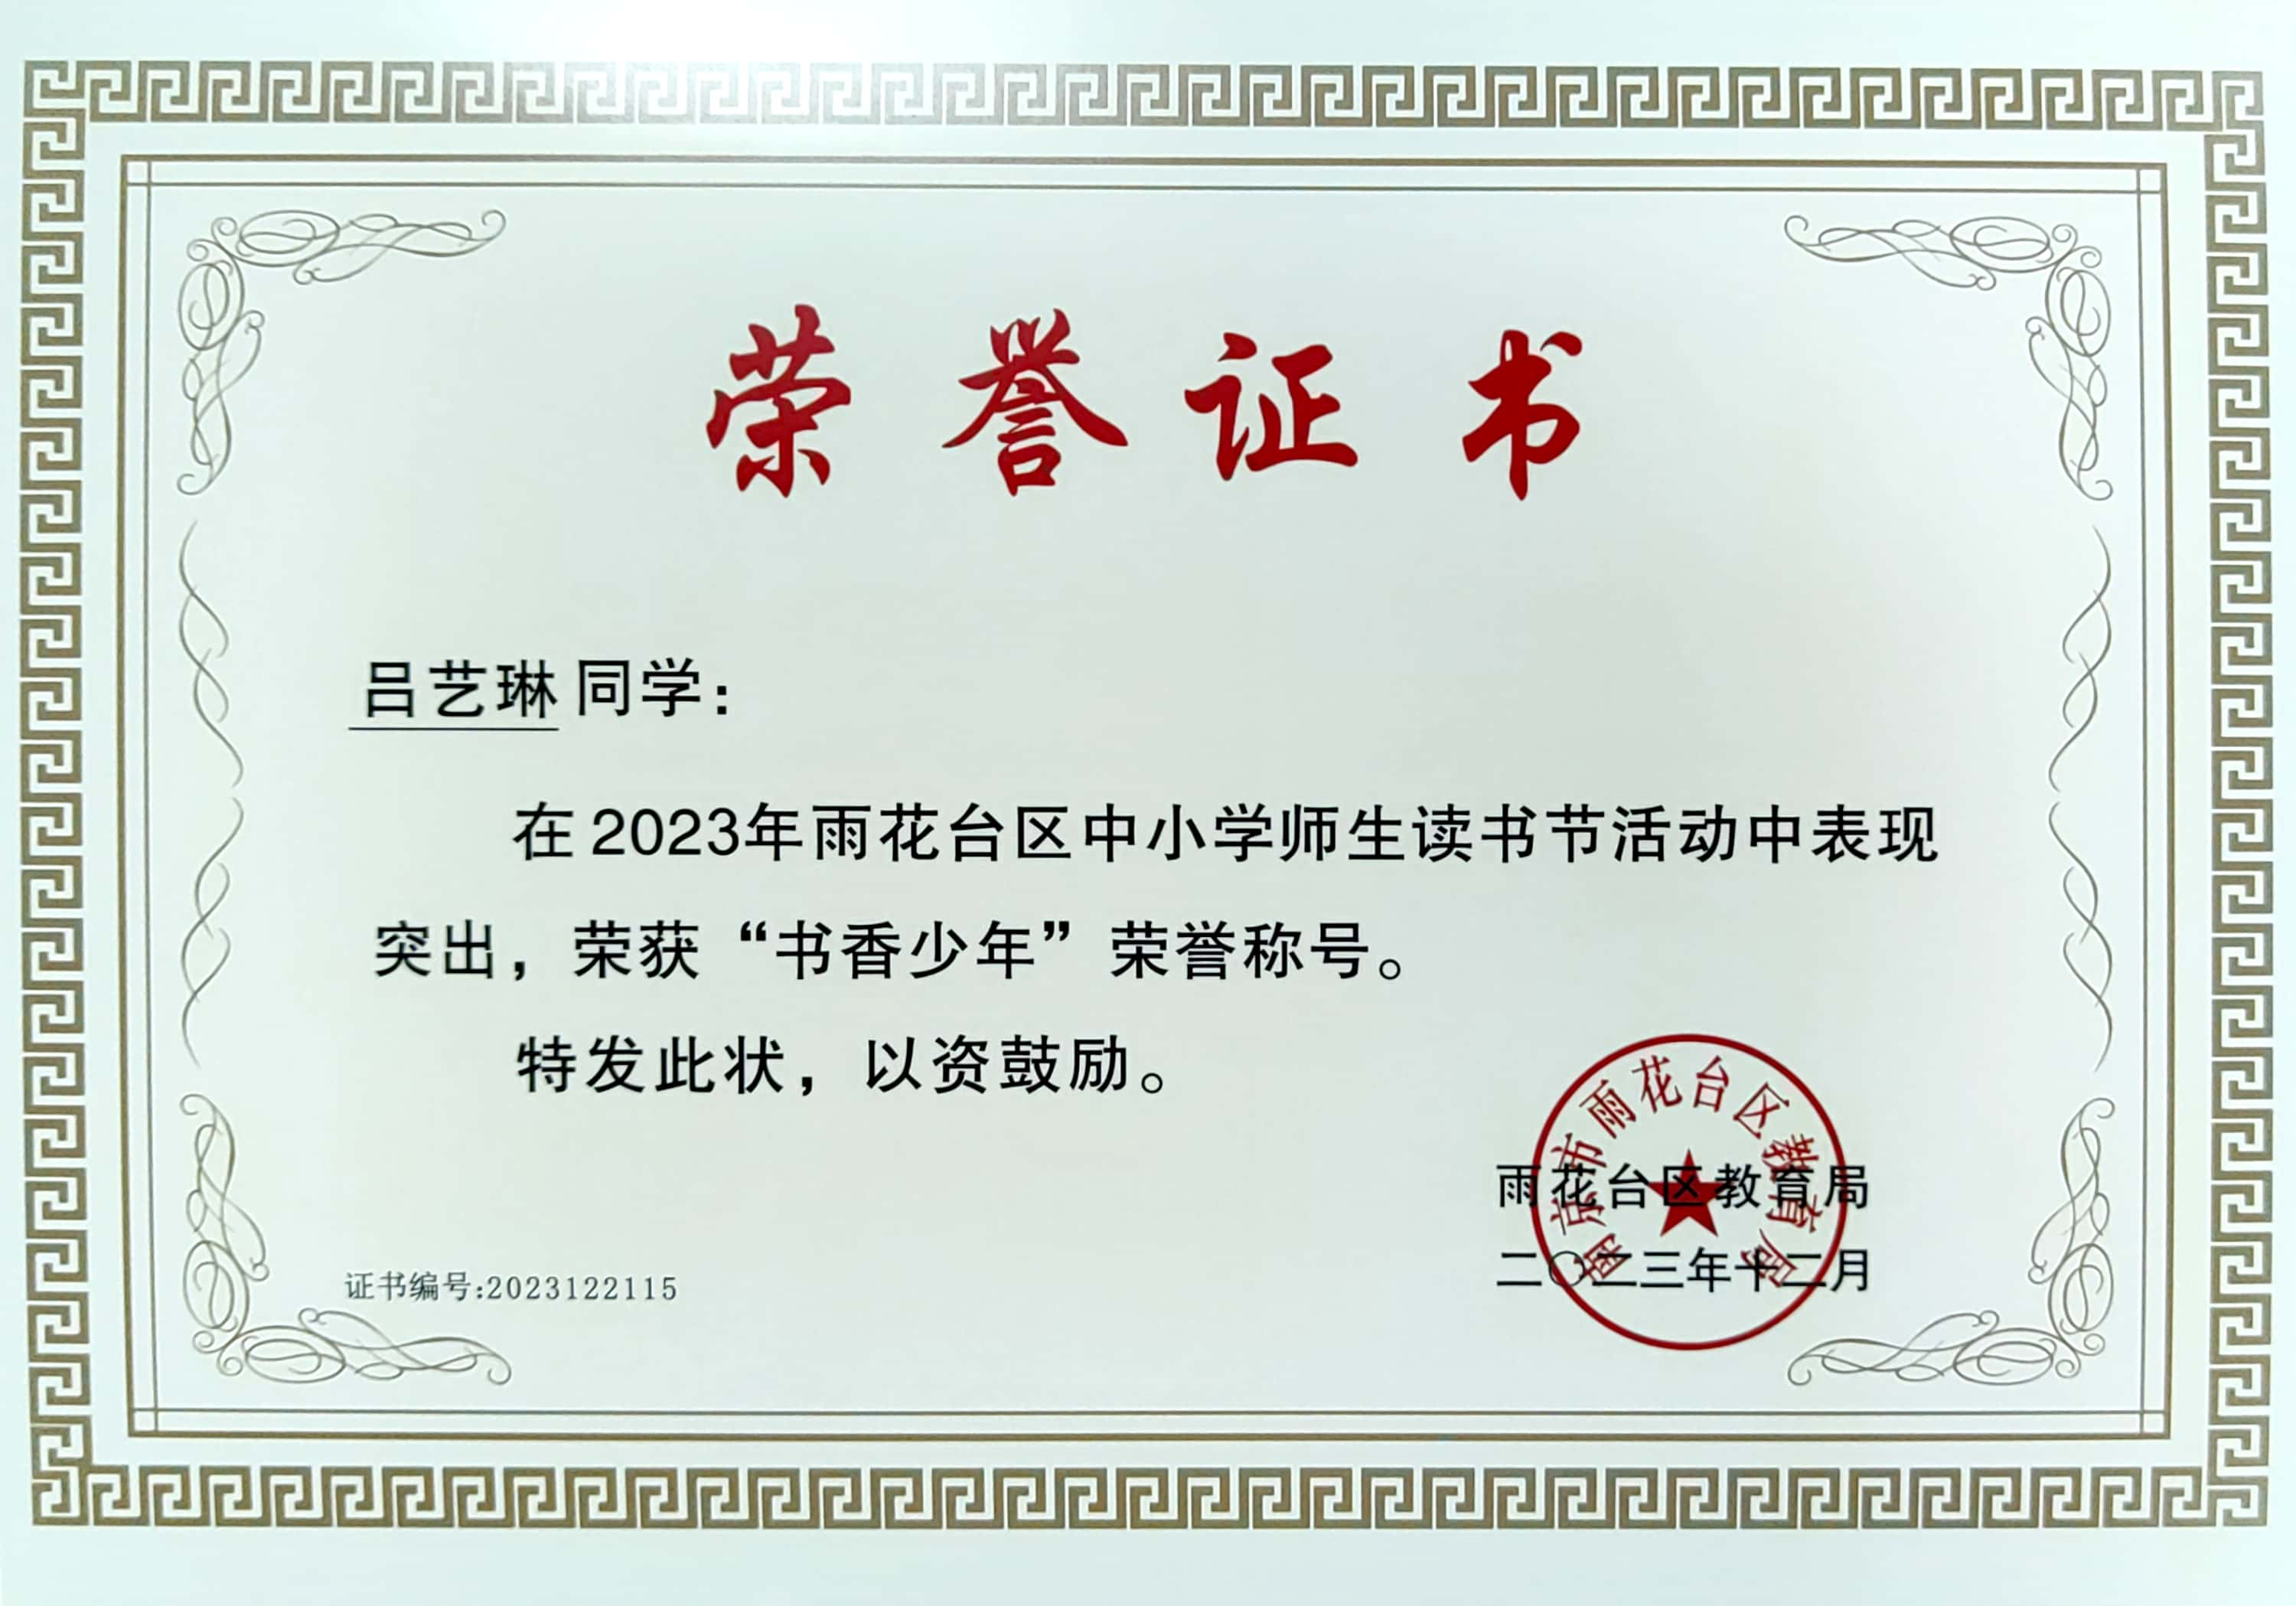 吕艺琳同学在2023年雨花台区中小学师生读书节活动中表现突出，荣获“书香少年”荣誉称号.jpg